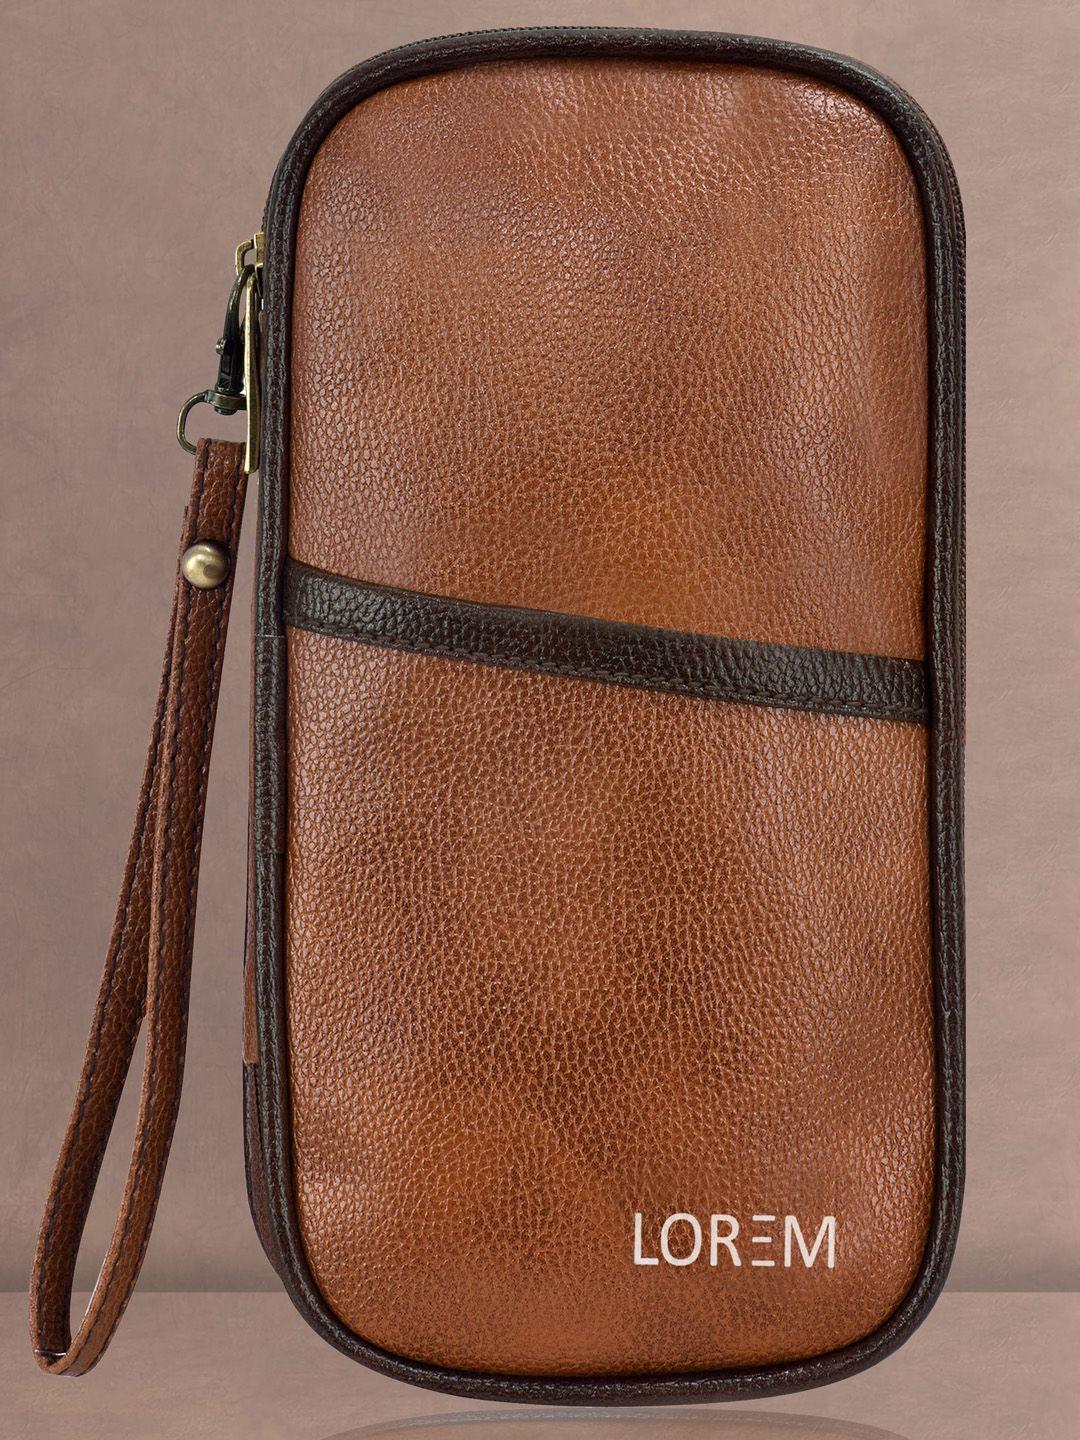 lorem faux leather organizer pouch